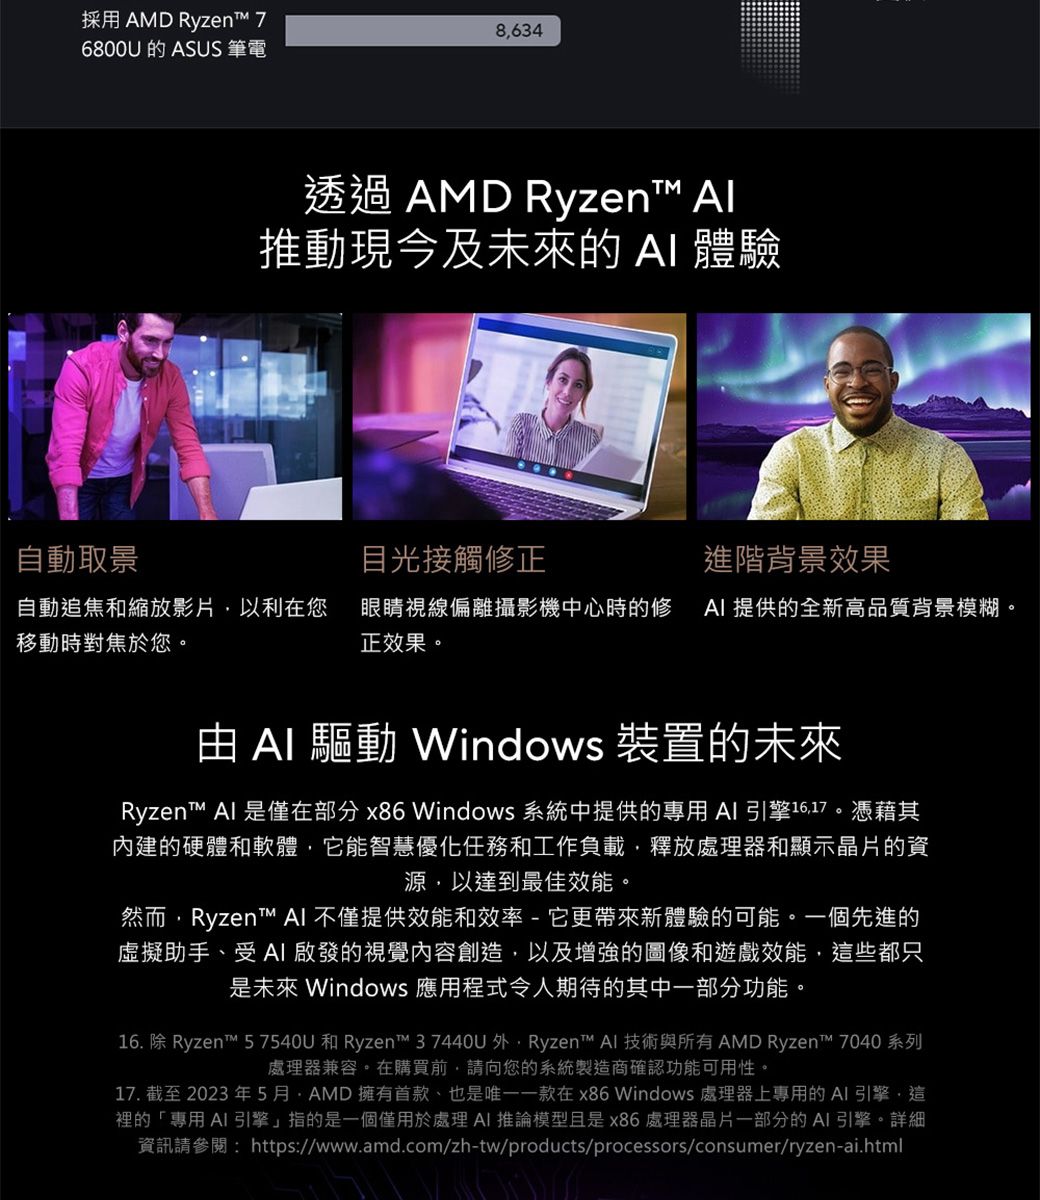 採用 AMD Ryzen 76800U 的 ASUS 筆電8634透過 AMD Ryzen 推動現今及未來的  體驗自動取景目光接觸修正進階背景效果自動追焦和縮放影片以利在您移動時對焦於您。眼睛視線偏離攝影機中心時的修  提供的全新高品質背景模糊。正效果。   Windows 裝置的未來Ryzen™ Al 是僅在部分 x86 Windows 系統中提供的專用  引擎1617。憑藉其內建的硬體和軟體,它能智慧優化任務和工作負載,釋放處理器和顯示晶片的資源,以達到最佳效能。然而,Ryzent™ AI 不僅提供效能和效率-它更帶來新體驗的可能。一個先進的虛擬助手、受AI啟發的視覺內容創造,以及增強的圖像和遊戲效能,這些都只是未來 Windows 應用程式令人期待的其中一部分功能。16. 除 Ryzen™ 57540U 和 Ryzen™ 37440U 外,Ryzen™ AI 技術與所有 AMD Ryzen™ 7040 系列處理器兼容。在購買前,請向您的系統製造商確認功能可用性。17. 截至2023年5月AMD擁有首款、也是唯一一款在x86 Windows 處理器上專用的AI引擎,這裡的「專用AI 引擎」指的是一個僅用於處理AI 推論模型且是x86處理器晶片一部分的AI引擎。詳細資訊請參閱:https://www.amd.com/zh-tw/products/processors/consumer/ryzen-ai.html